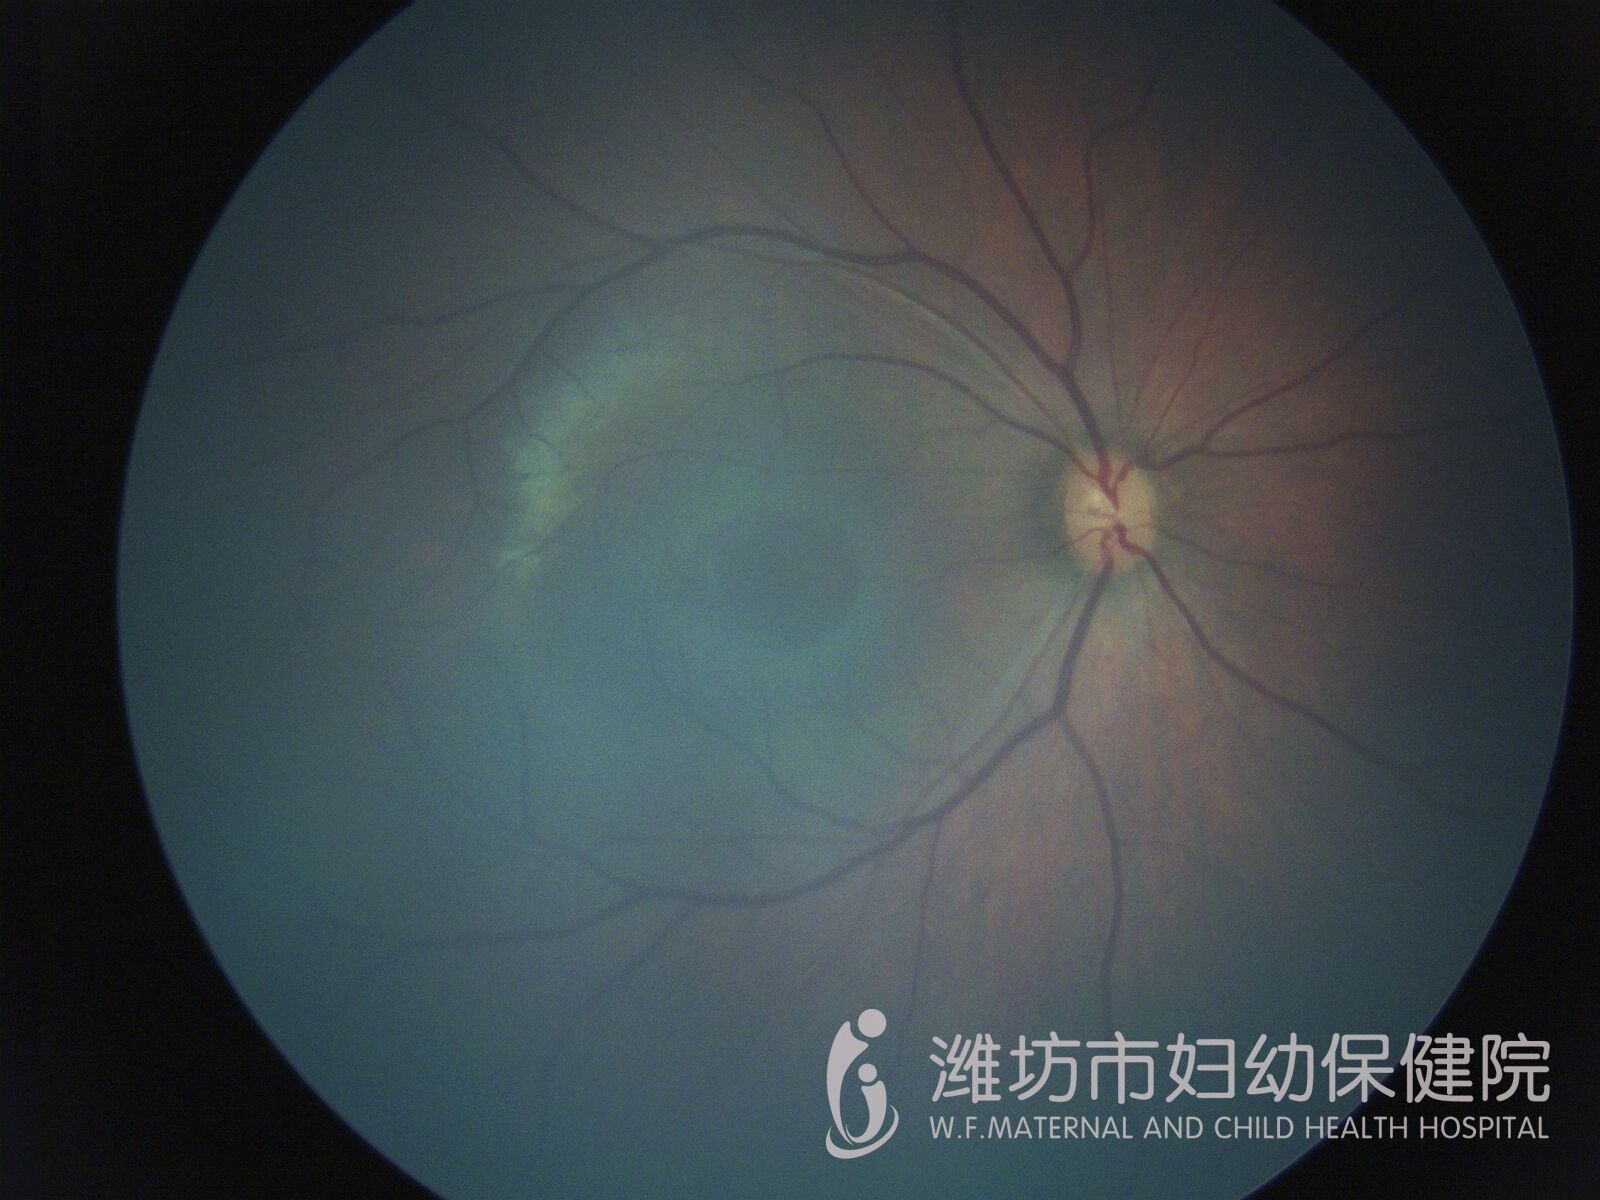 视网膜母细胞瘤不可怕  及早治疗,治愈率很高专家解疑2019年2月22日